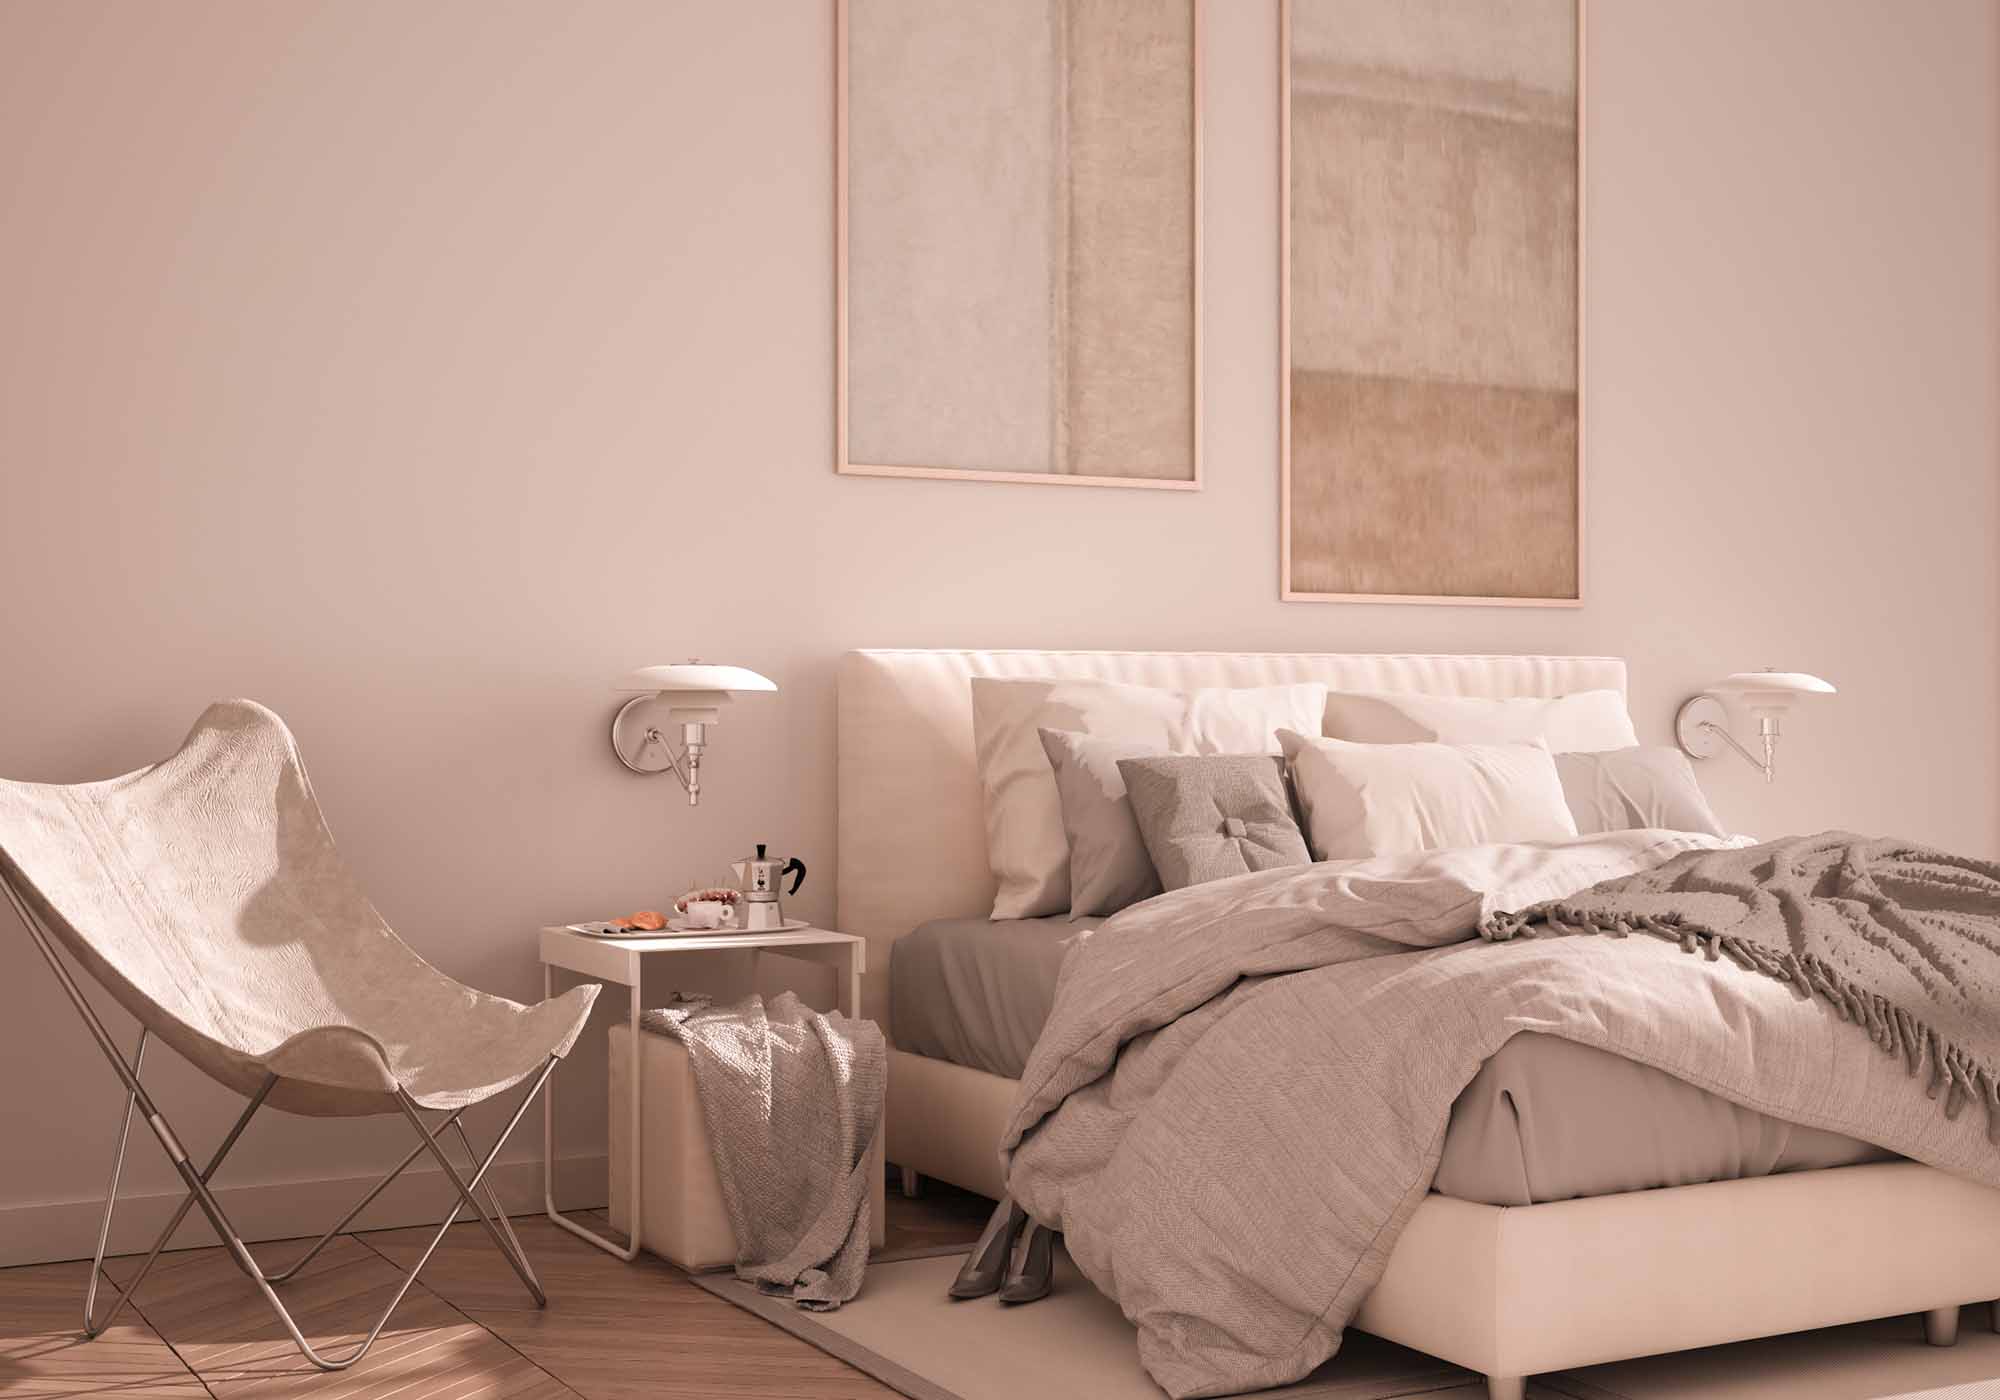 Camera da letto con materasso di qualità Beliamo - Garanzia di comfort e qualità con 15 anni di garanzia su Beliamo.com